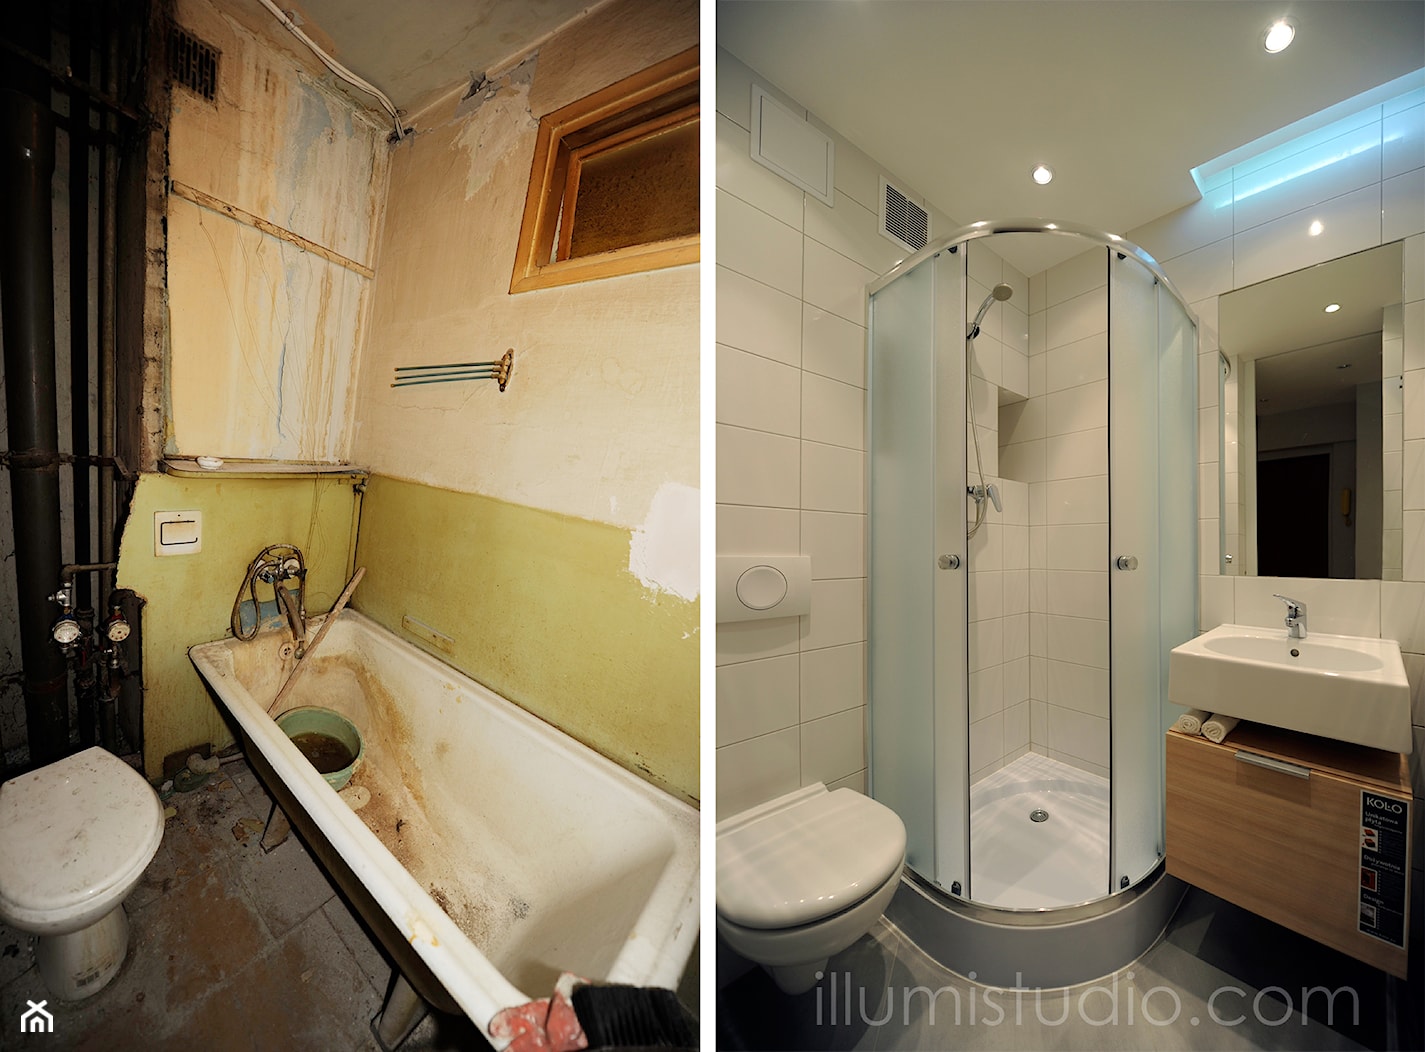 MIESZKANIE W BLOKU - zdjęcia z realizacji - metamorfoza 36 m2 w bloku. - Mała łazienka, styl nowoczesny - zdjęcie od ILLUMISTUDIO - Homebook